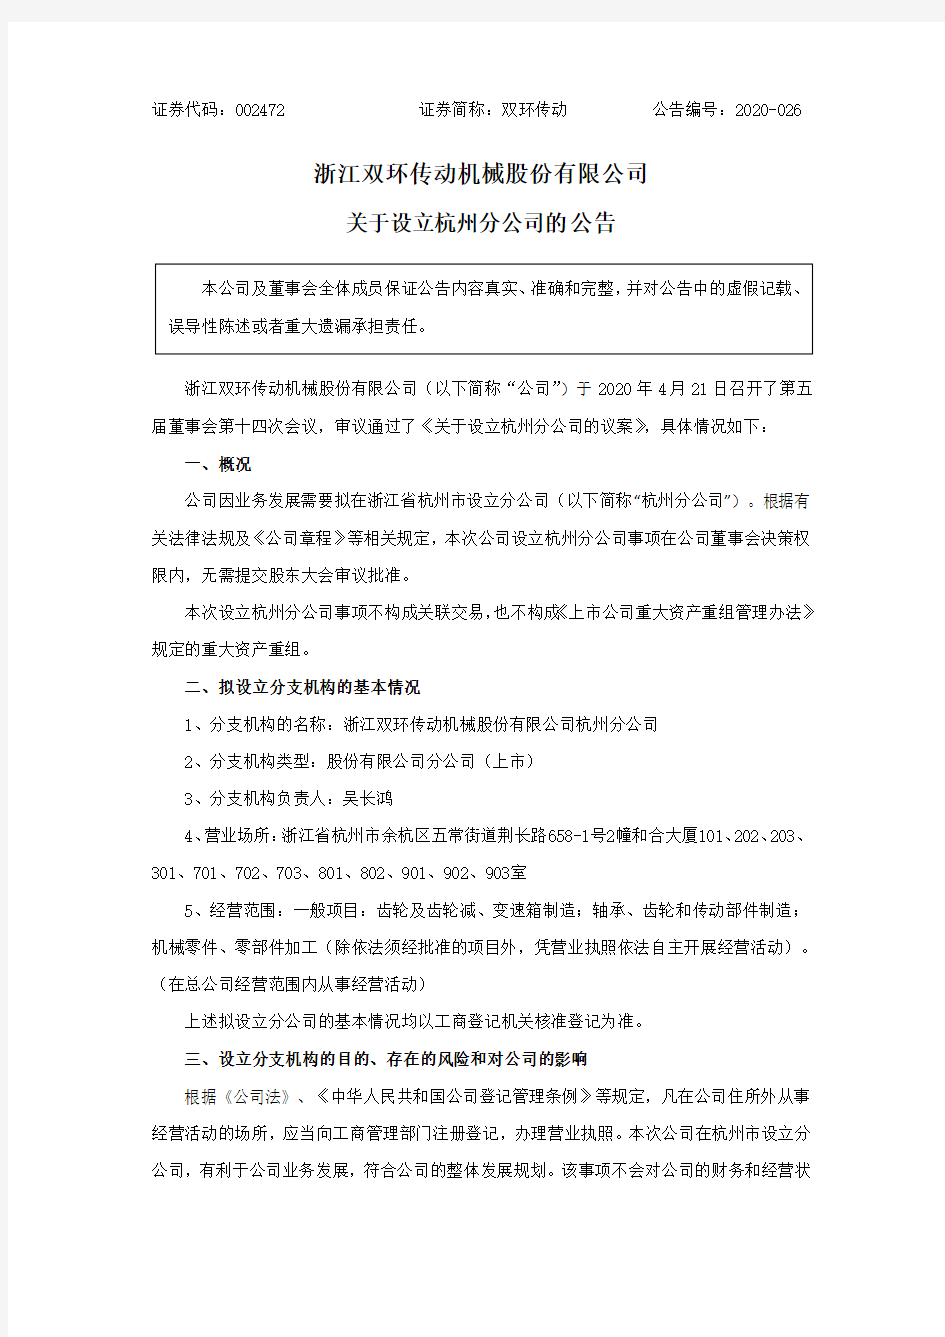 双环传动：关于设立杭州分公司的公告